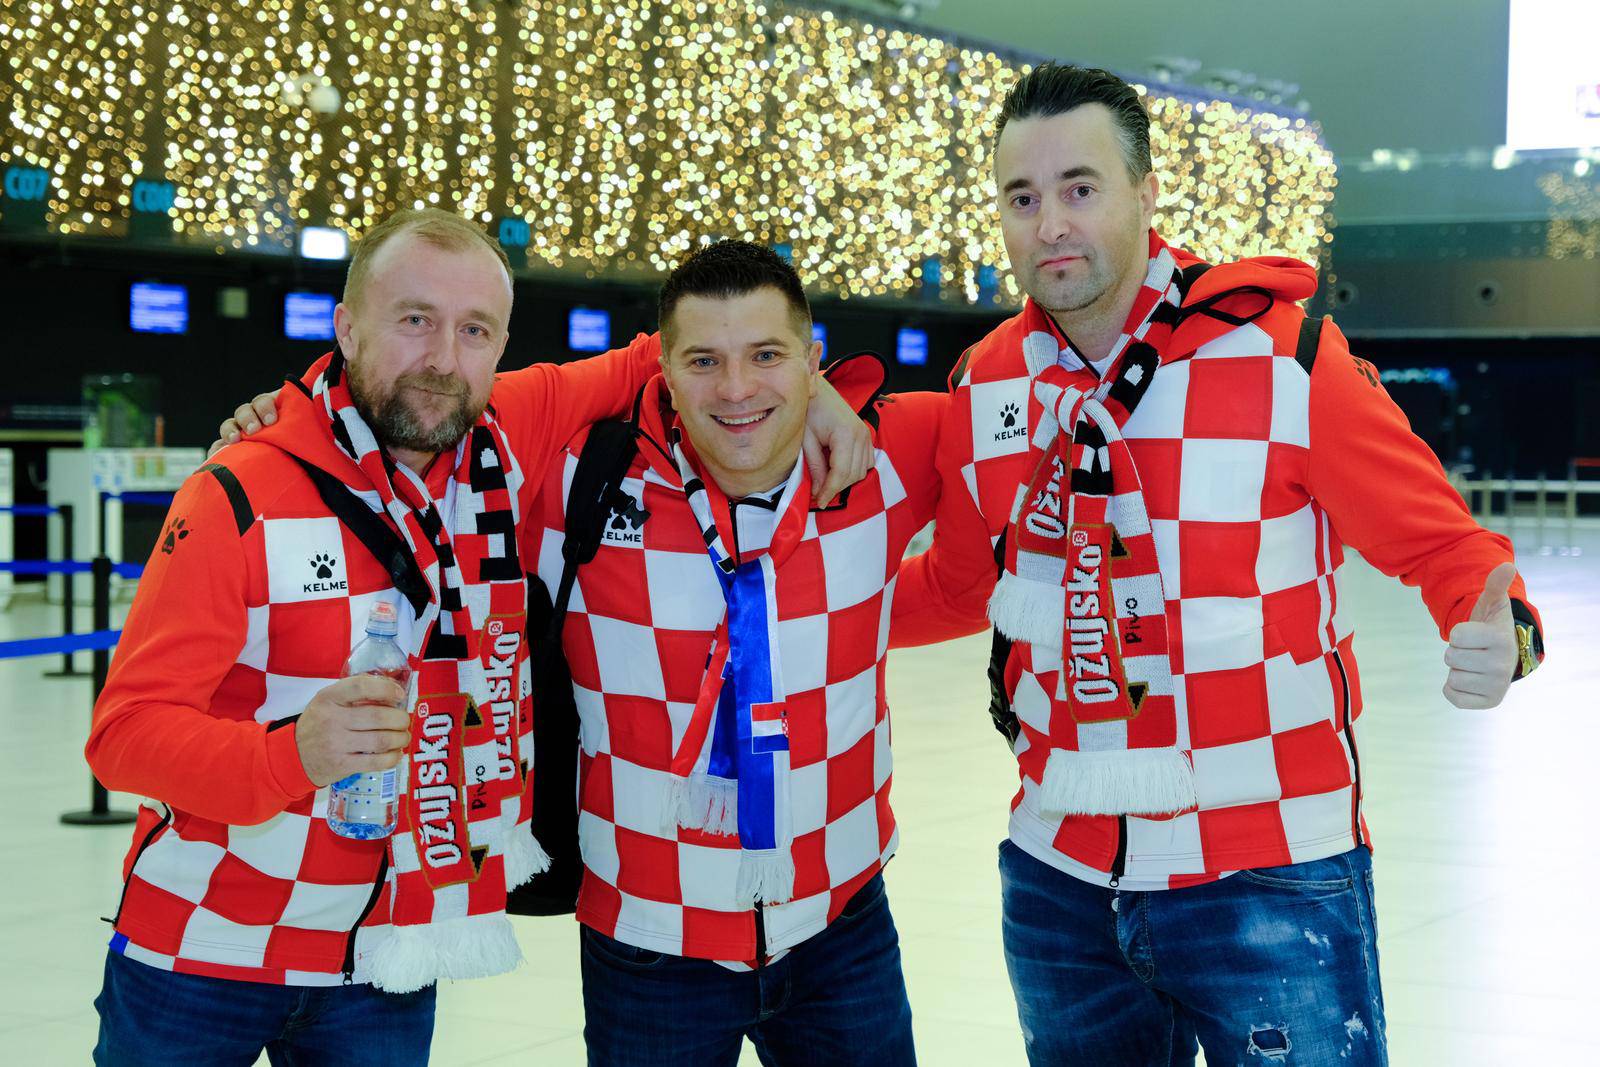 Hrvatski navijači s Plesa kreću prema Dohi dati podršku hrvatskoj nogometnoj reprezentaciji